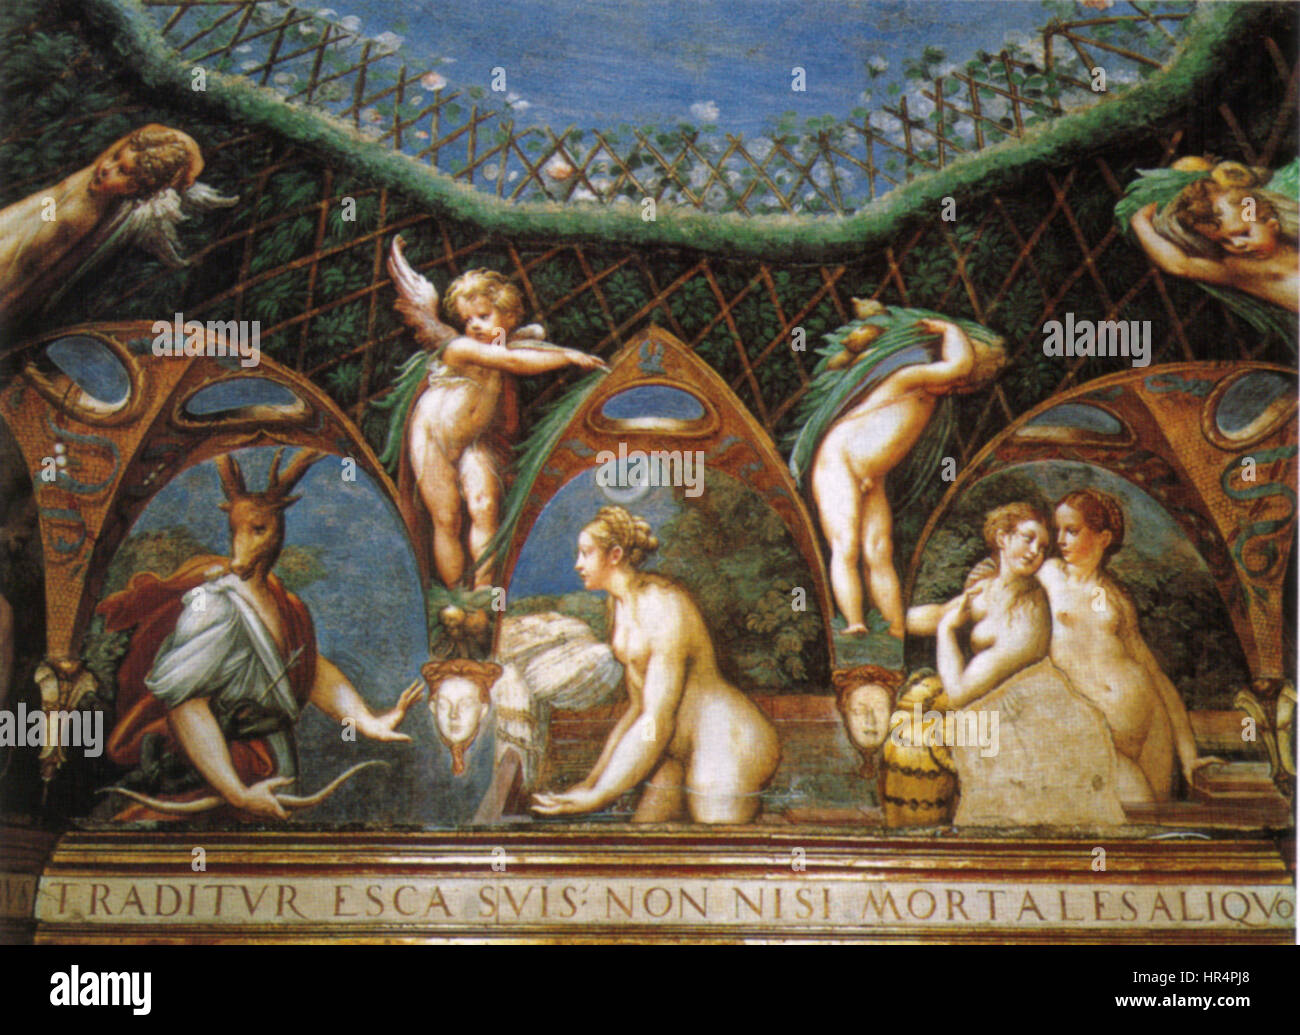 Parmigianino, affreschi di fontanellato 02 Stock Photo